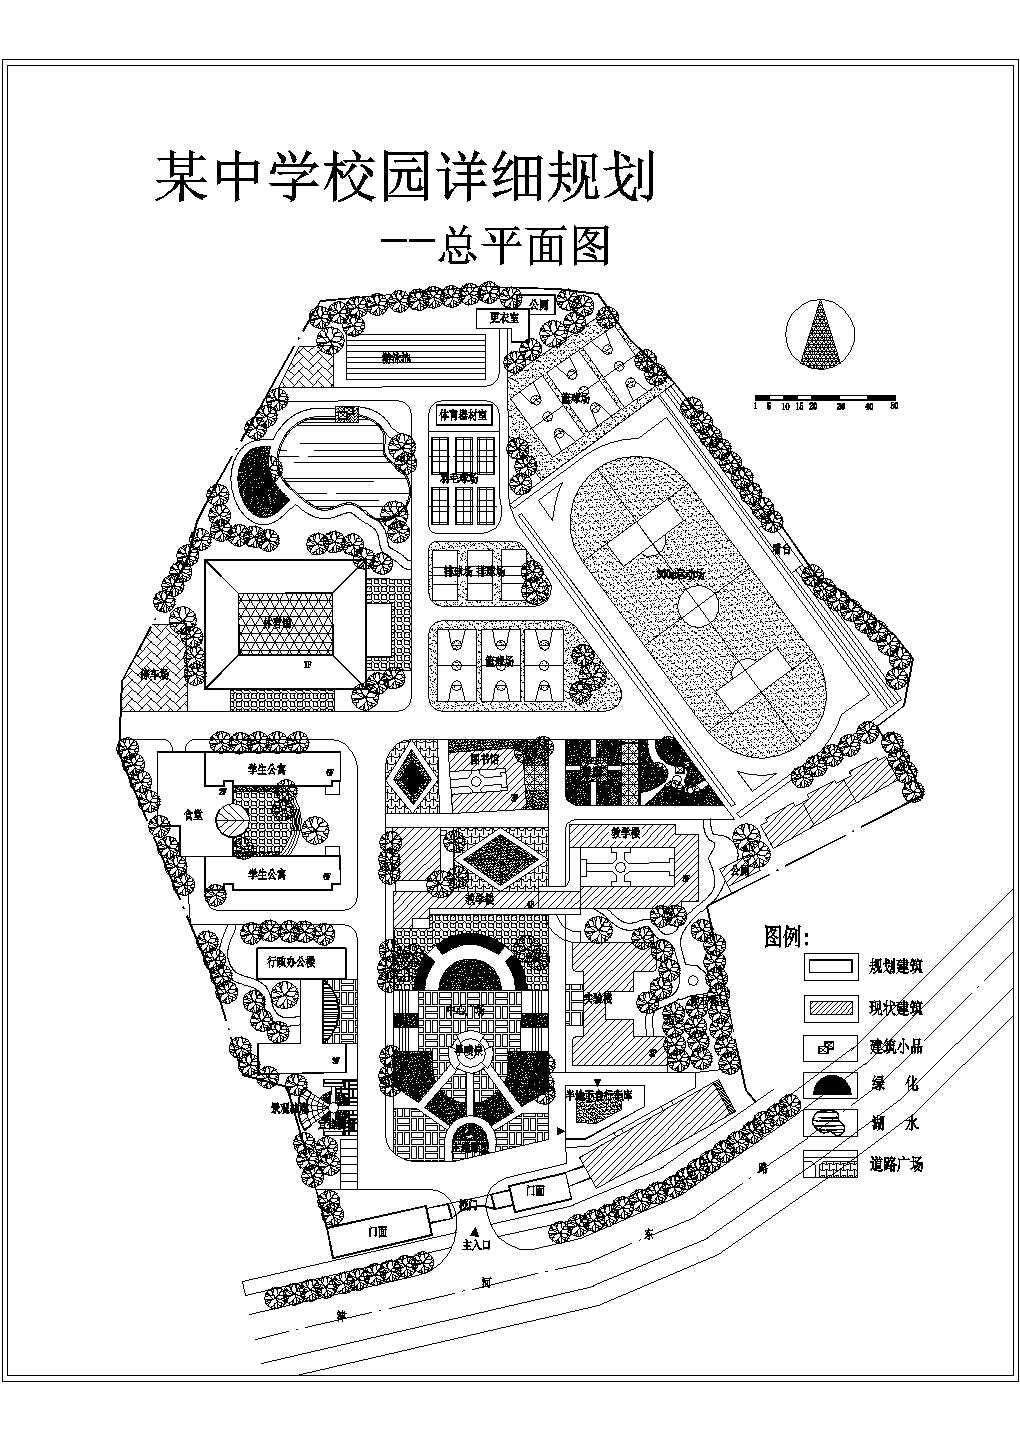 某地区校园总规划设计施工详细方案CAD图纸